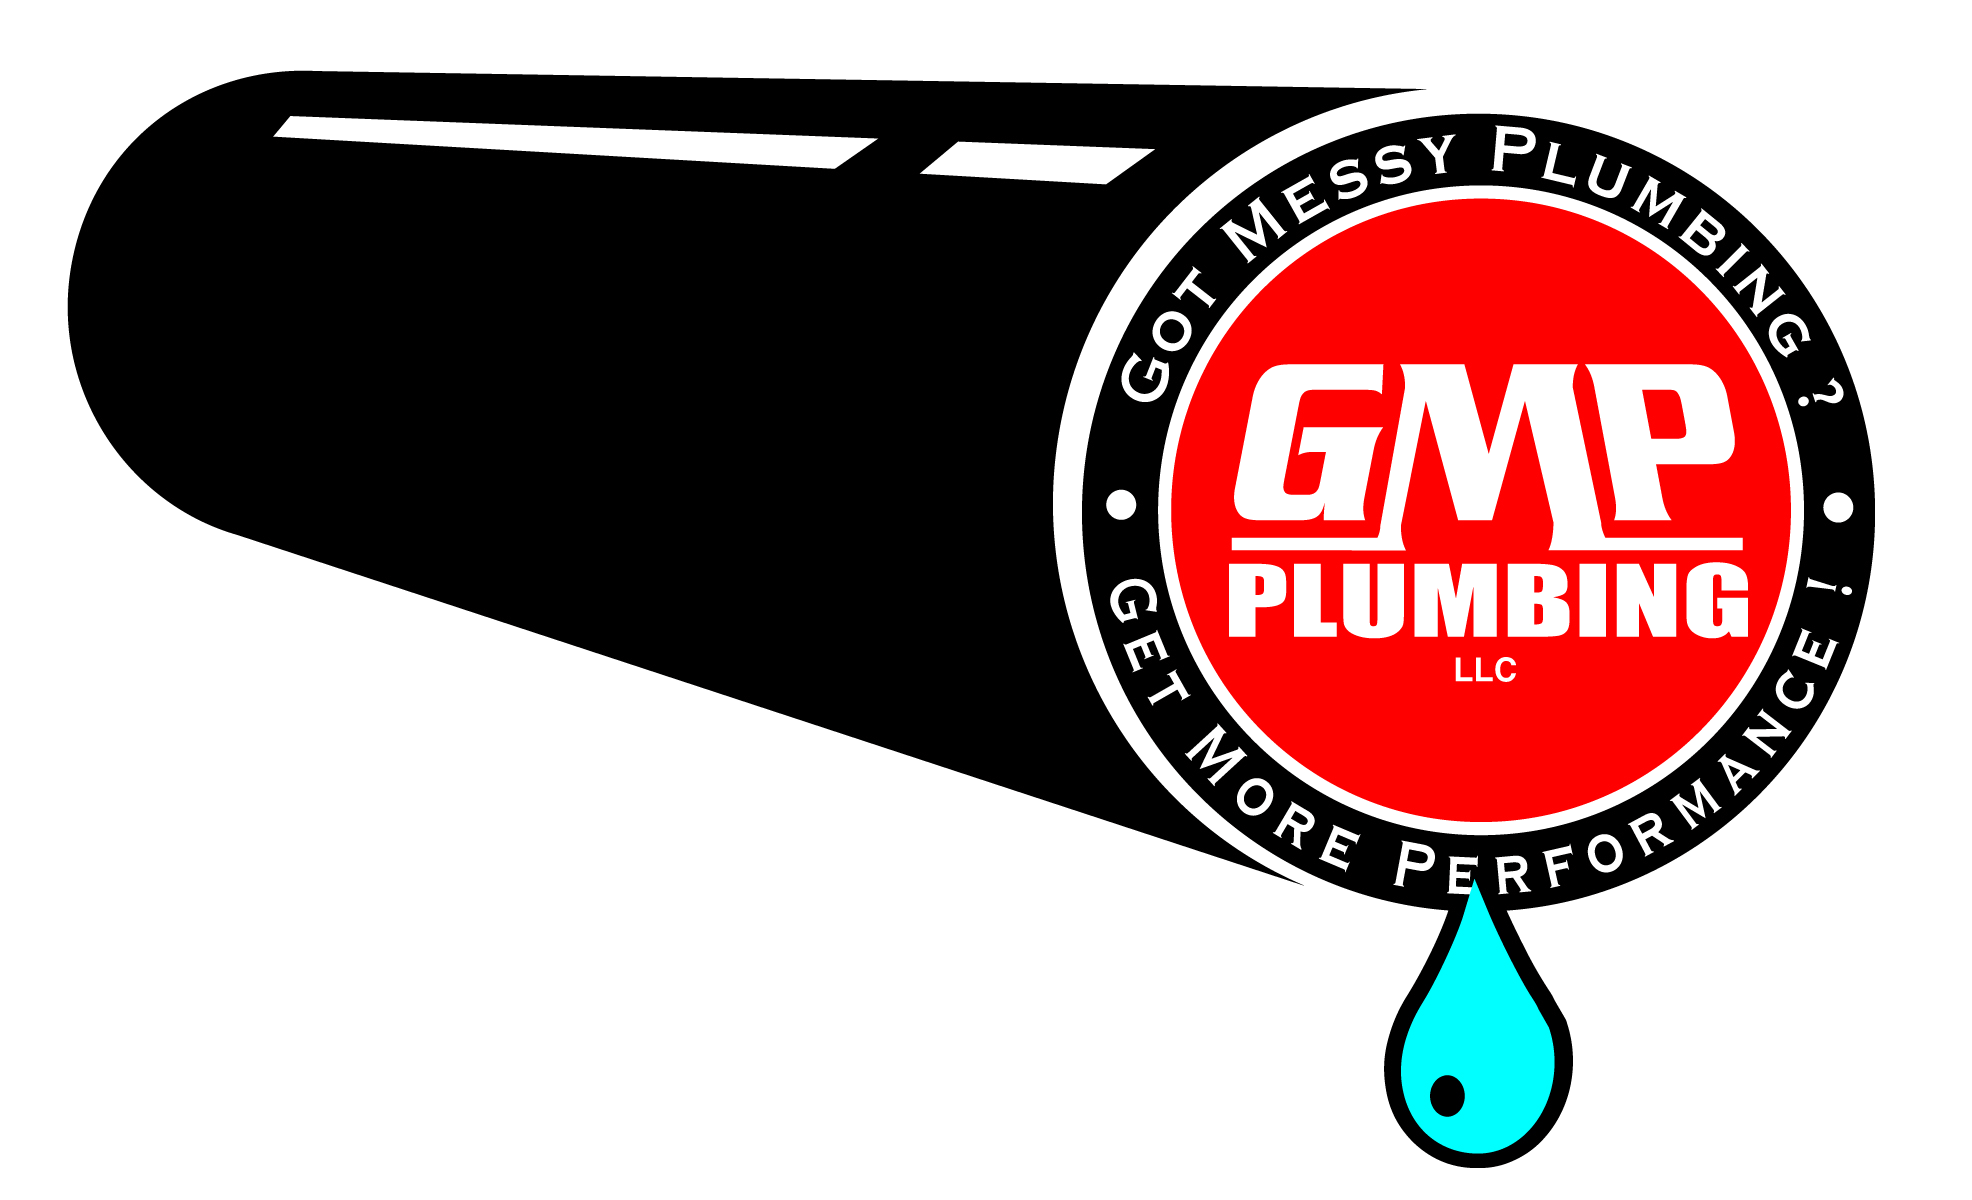 Gmp plumbing repair and. Plumber clipart craftsmen